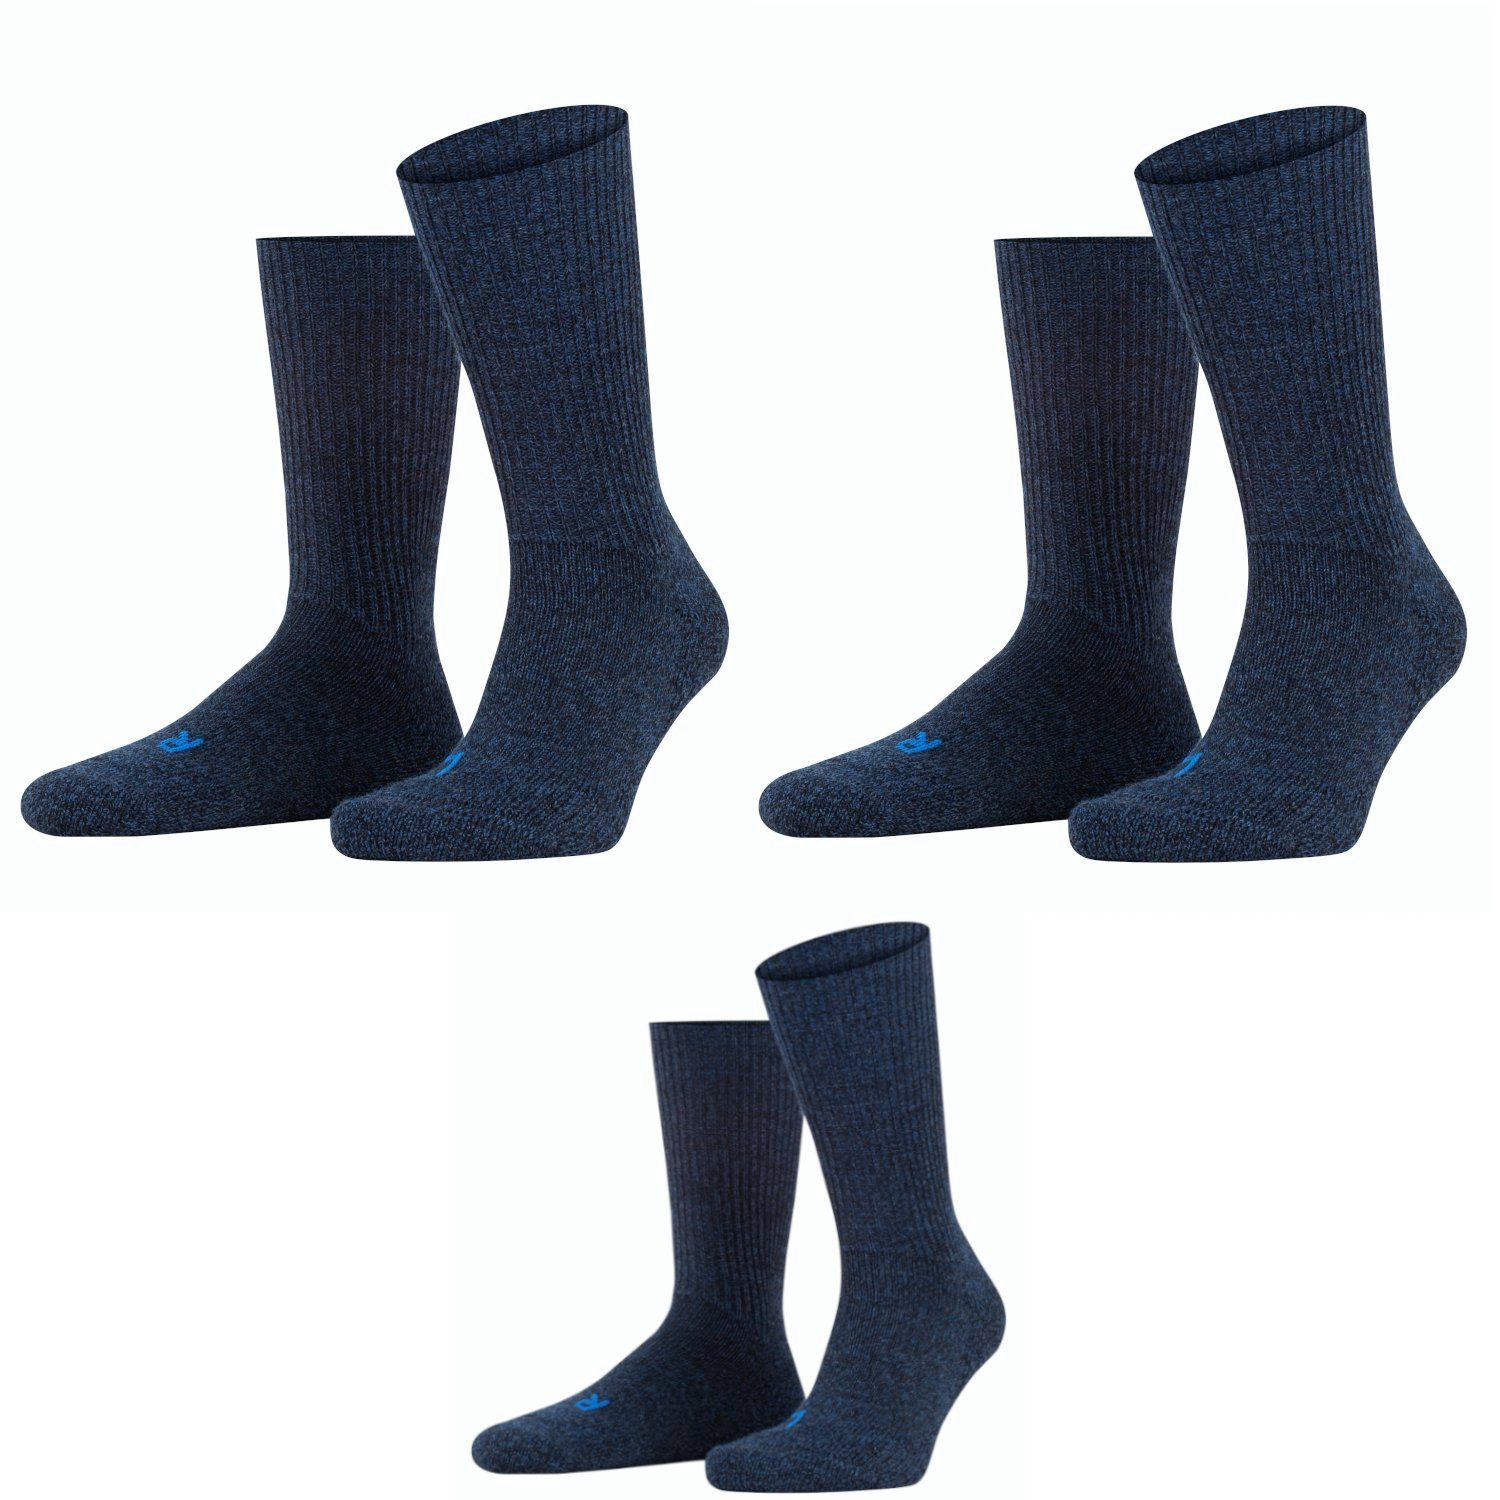 FALKE Wandersocken Lieblingsversand FALKE Walkie Ergo Unisex Socken Set 3  Paar, Farbe Blau (Bestehend aus 3 Paar FALKE Socken)